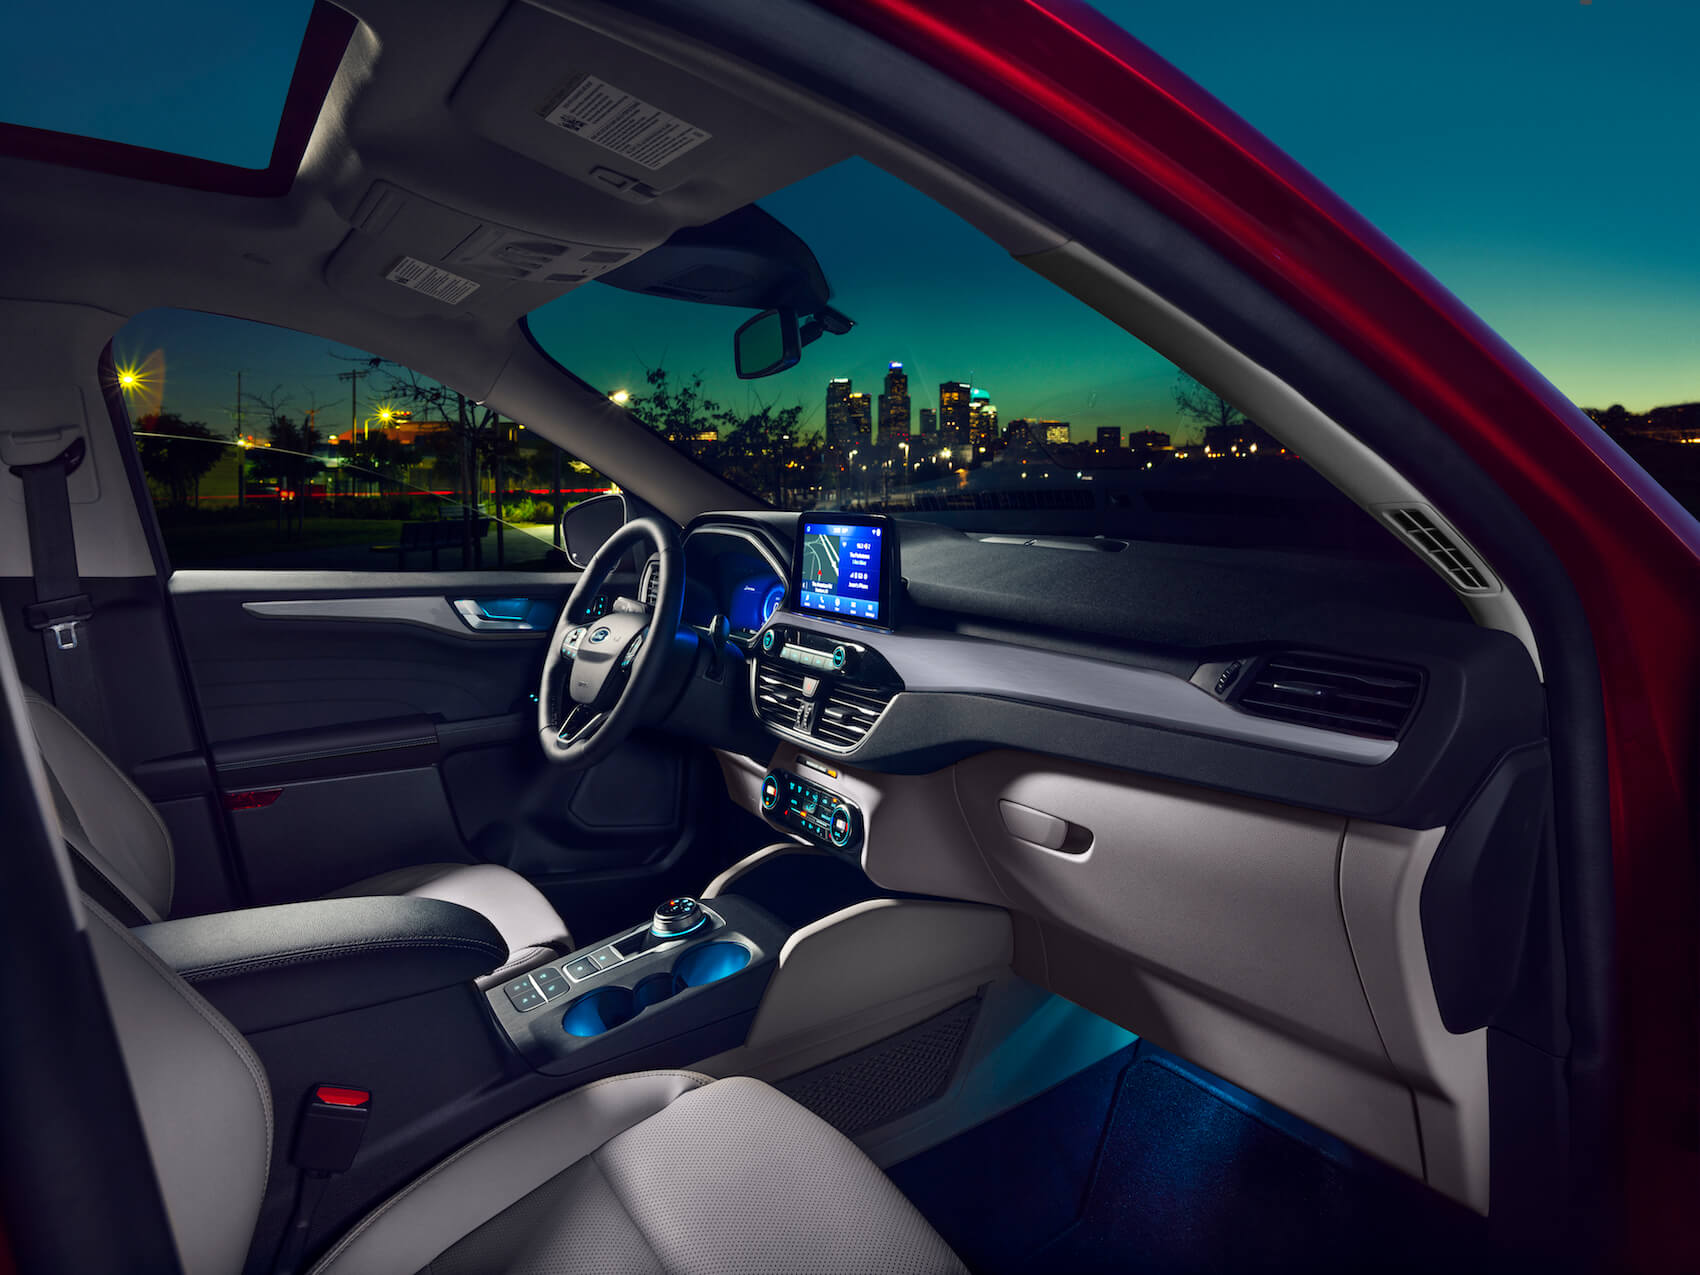 2021 Ford Escape interior dimensions